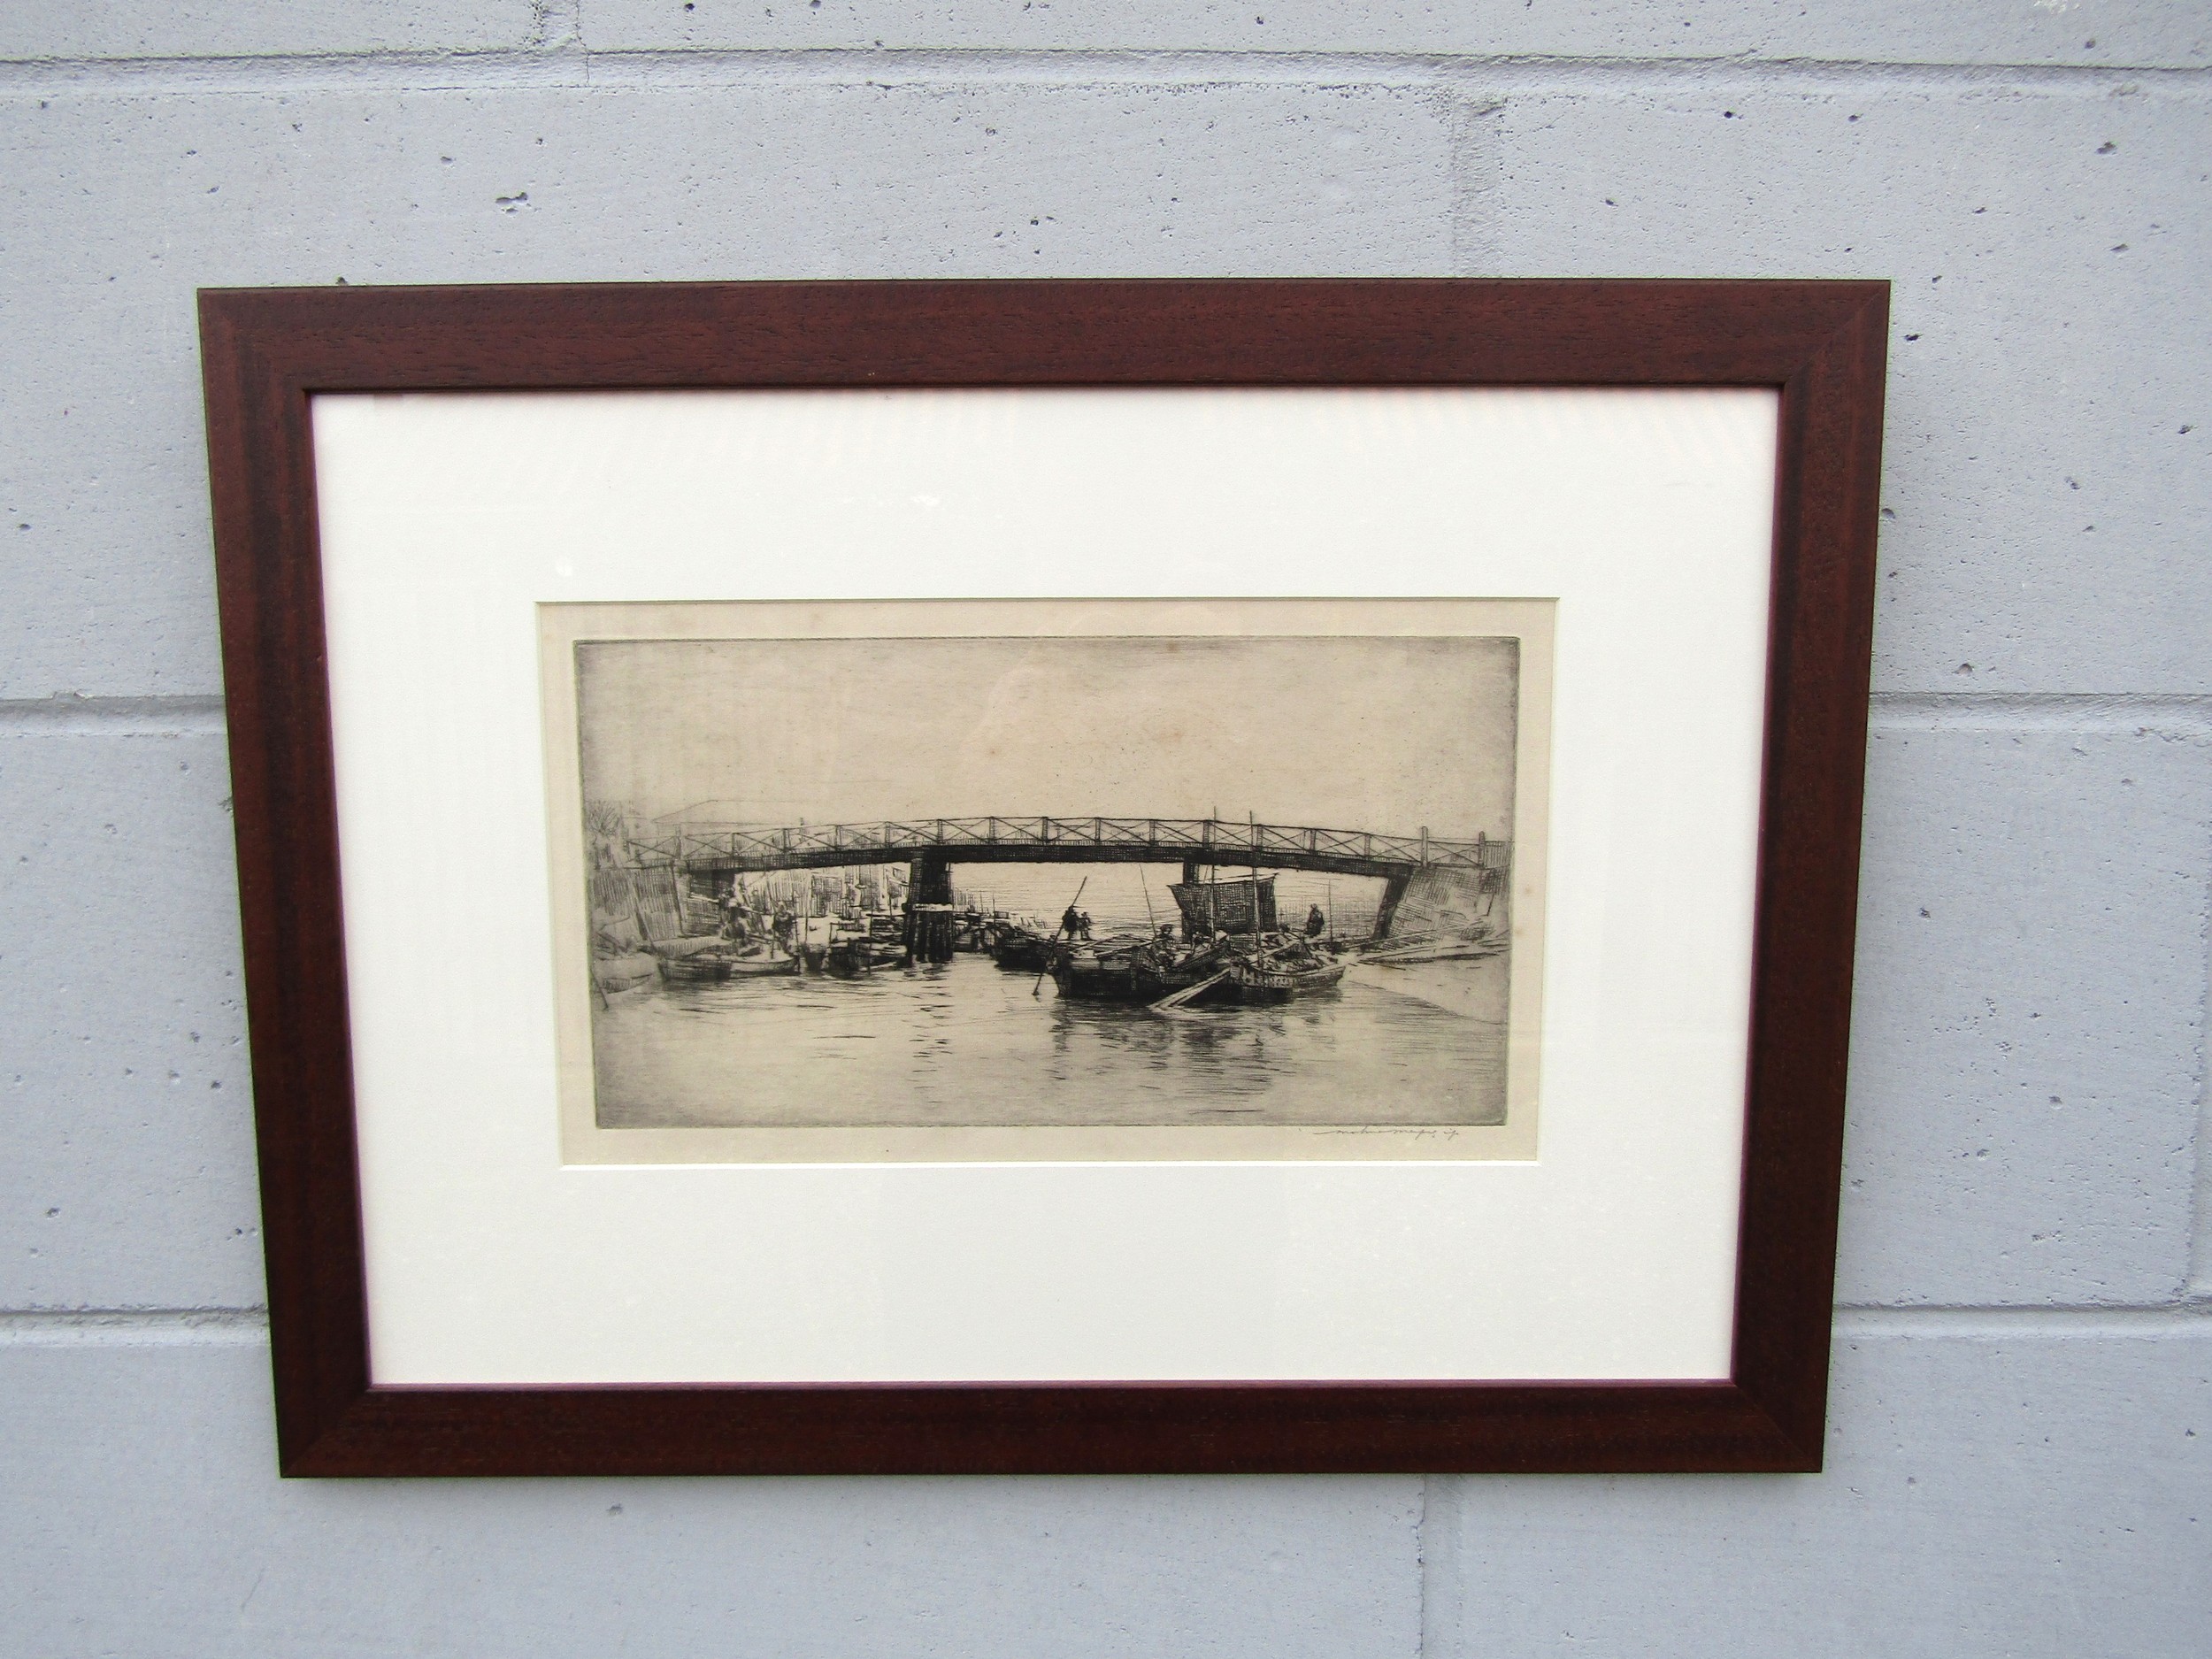 MORTIMER LUDDINGTON MENPES (Australian 1855-1938) 'Upstream from the harbour, Nagasaki' - drypoint